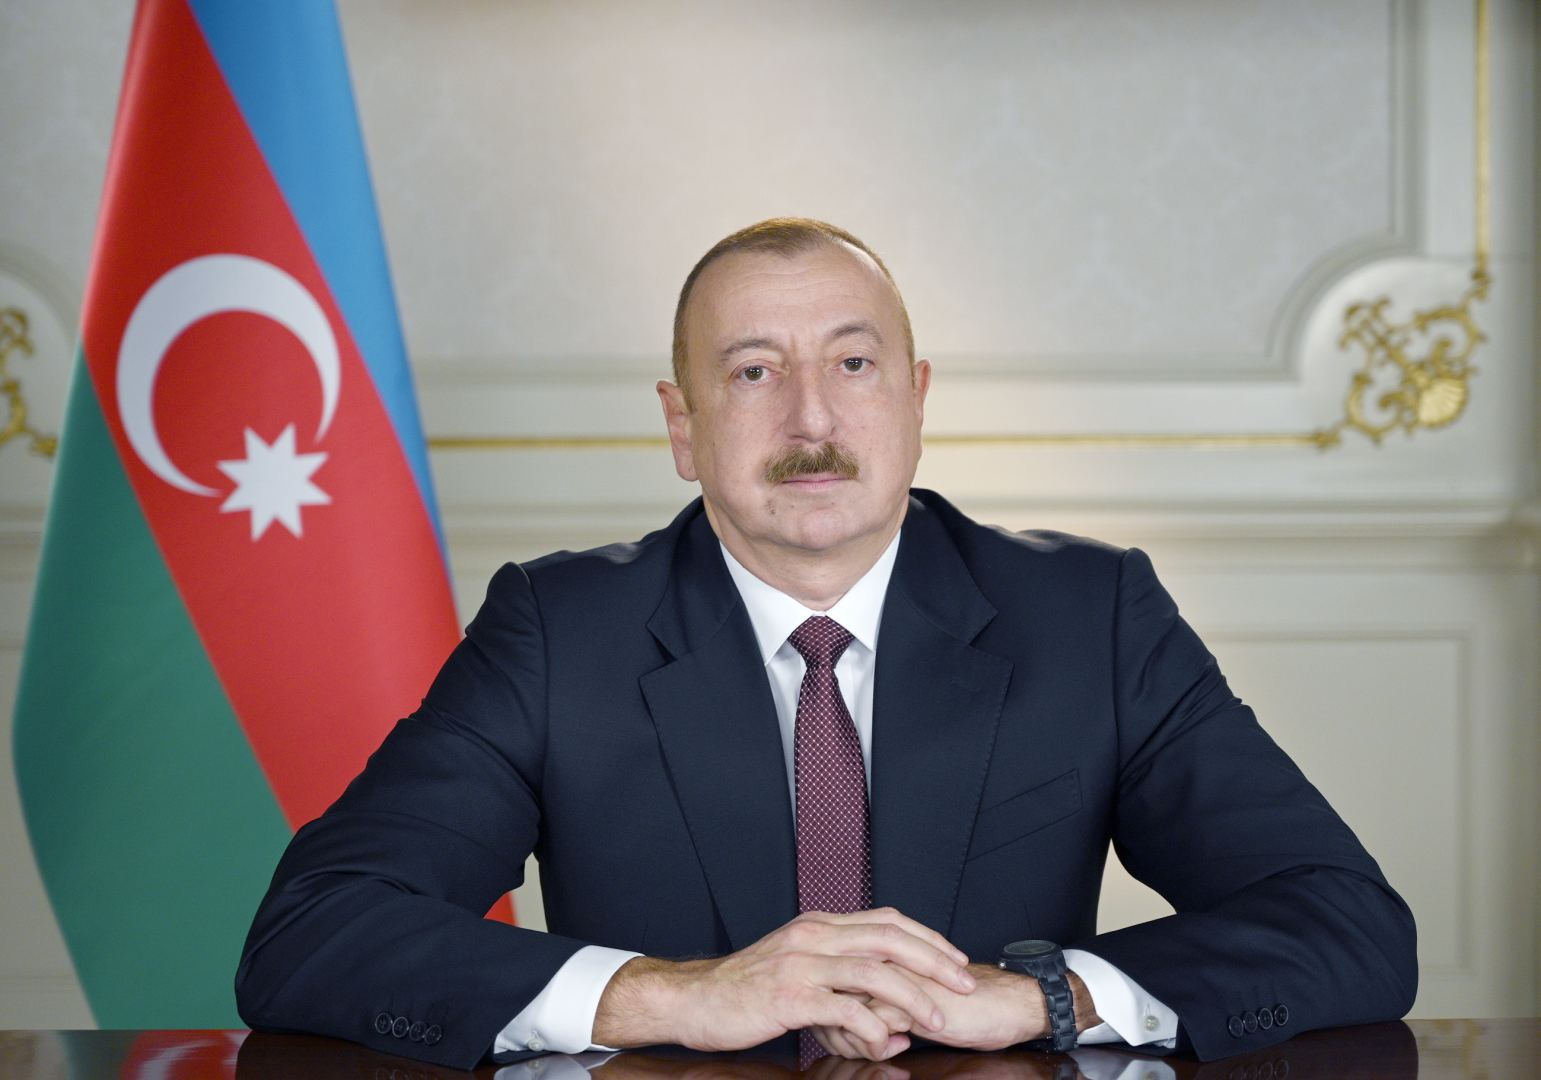 Ильхам Алиев подписал распоряжение о награждении сотрудников Бакинской музыкальной академии